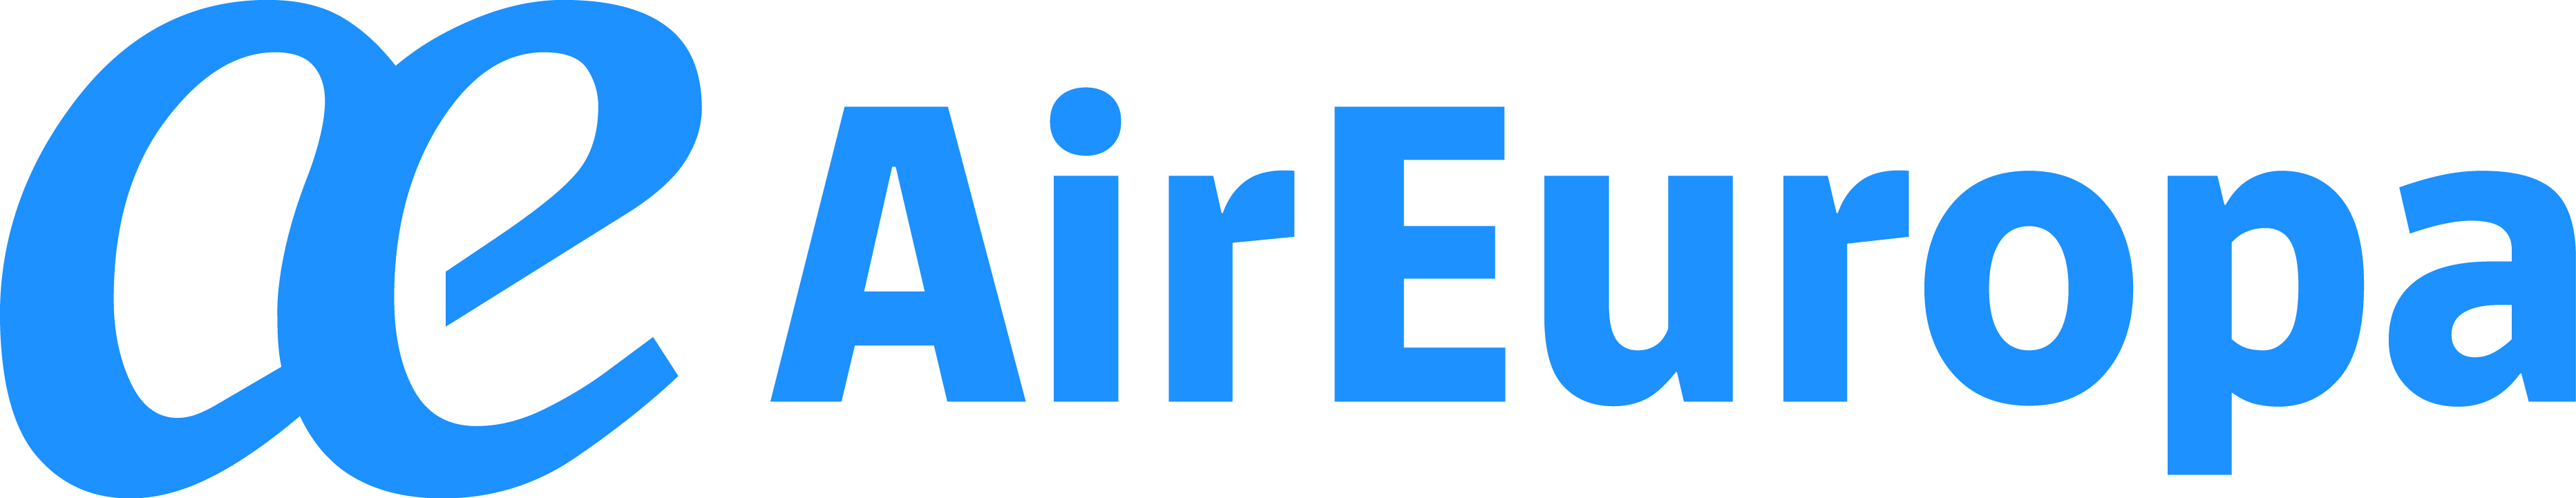 Air Europa-logo